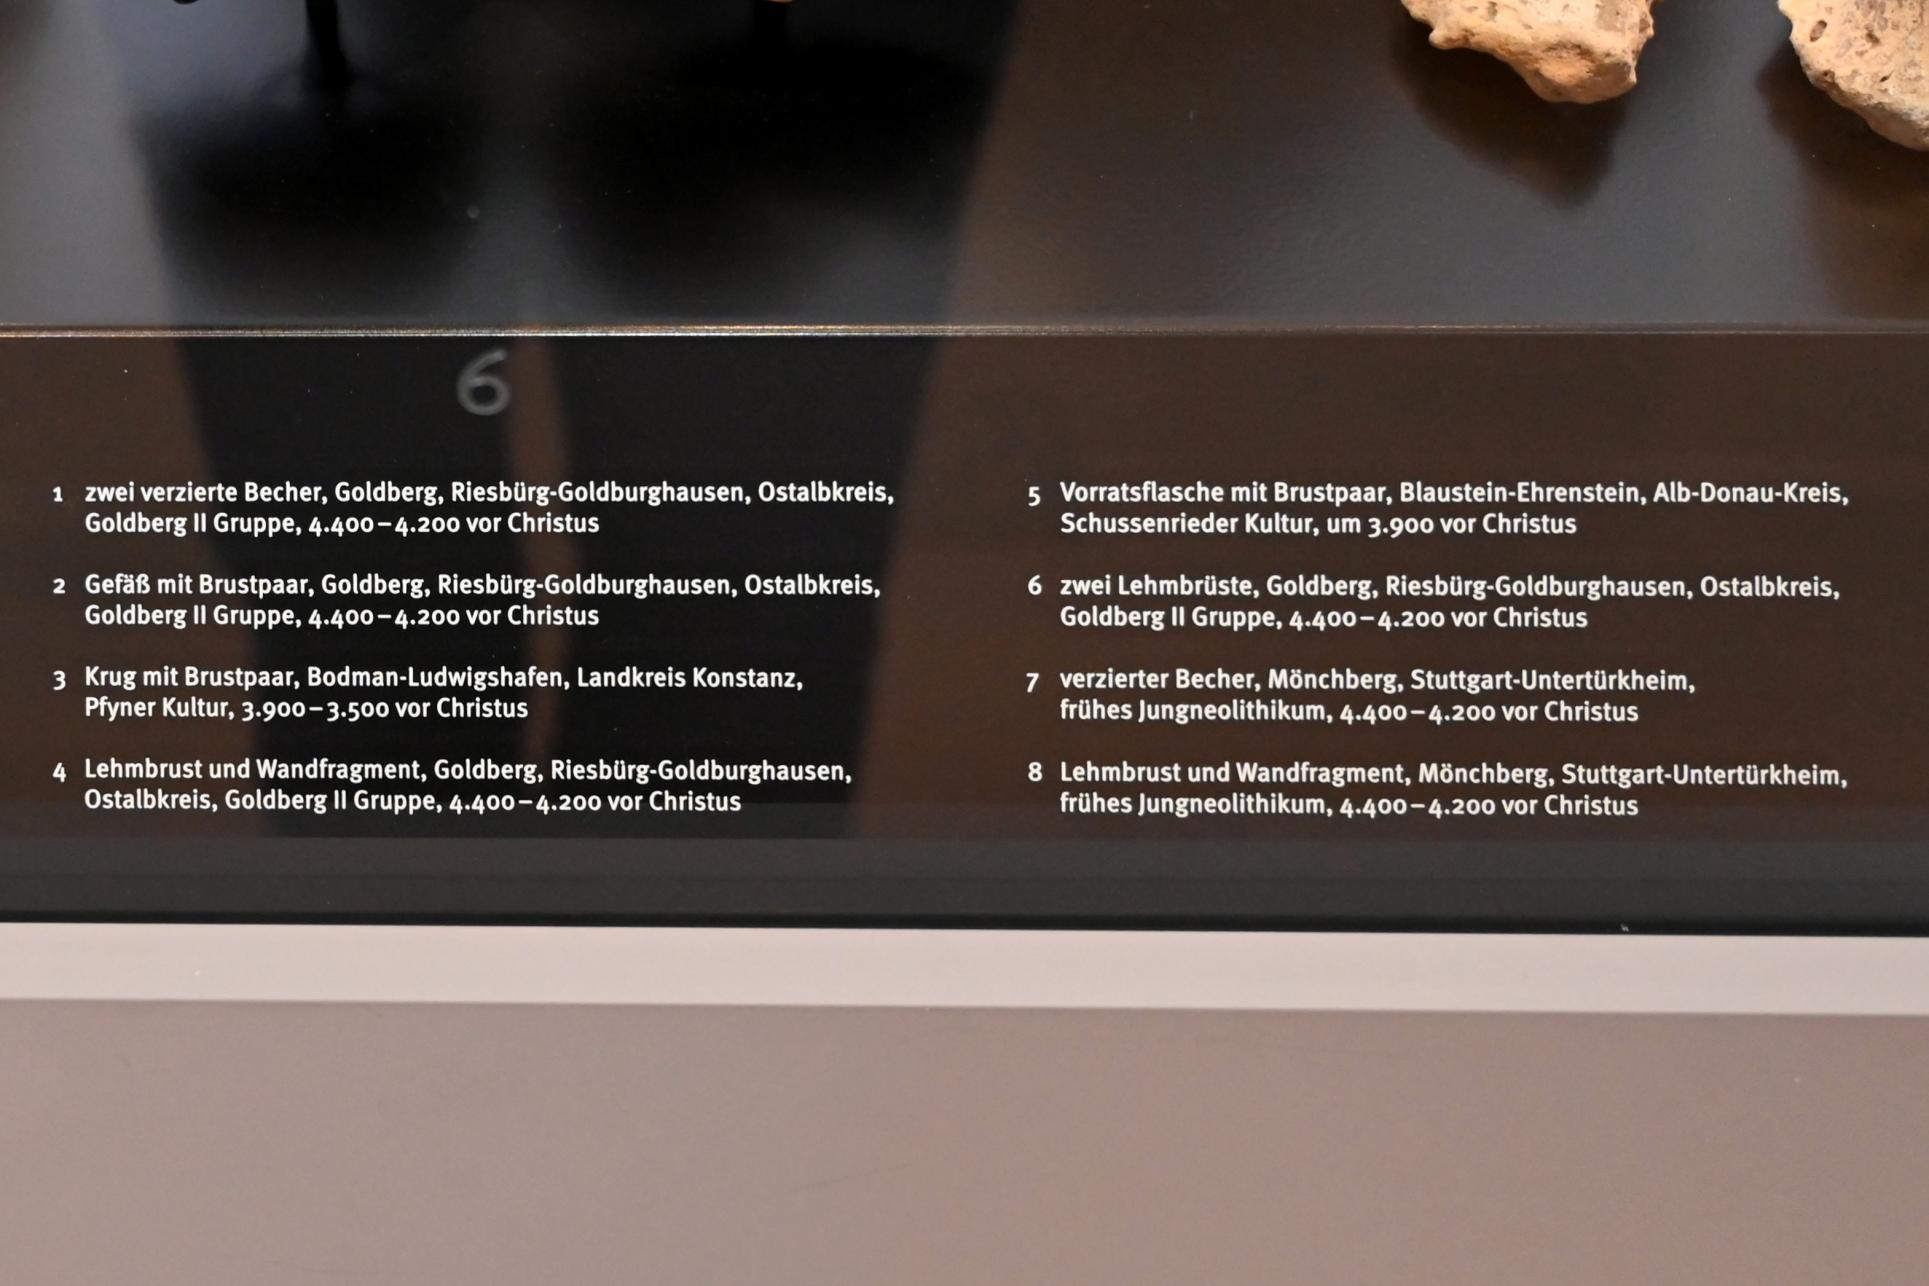 Zwei verzierte Becher, Neolithikum (Jungsteinzeit), 5500 - 1700 v. Chr., 4400 - 4200 v. Chr., Bild 3/4